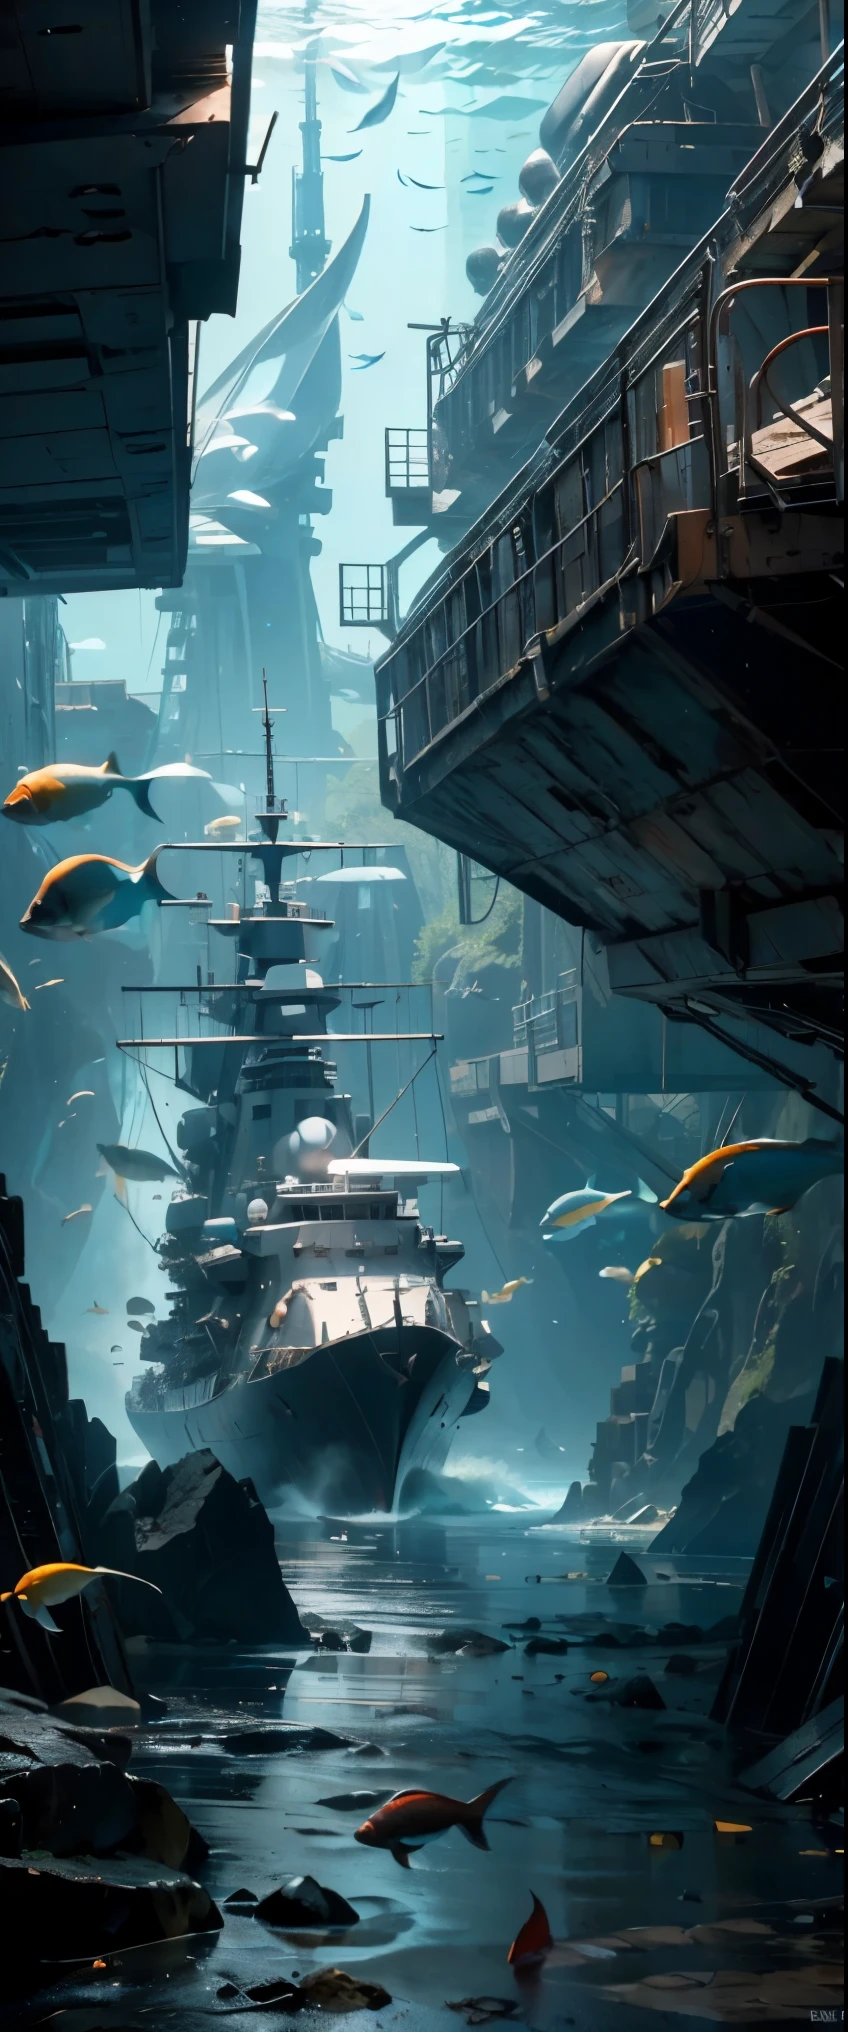 ((傑作, 頂級品質, 最好的品質, 高解析度, 形象的, 原始照片, 8K)), 海底的古代战舰现在是鱼类的游乐场, 水下攝影,

